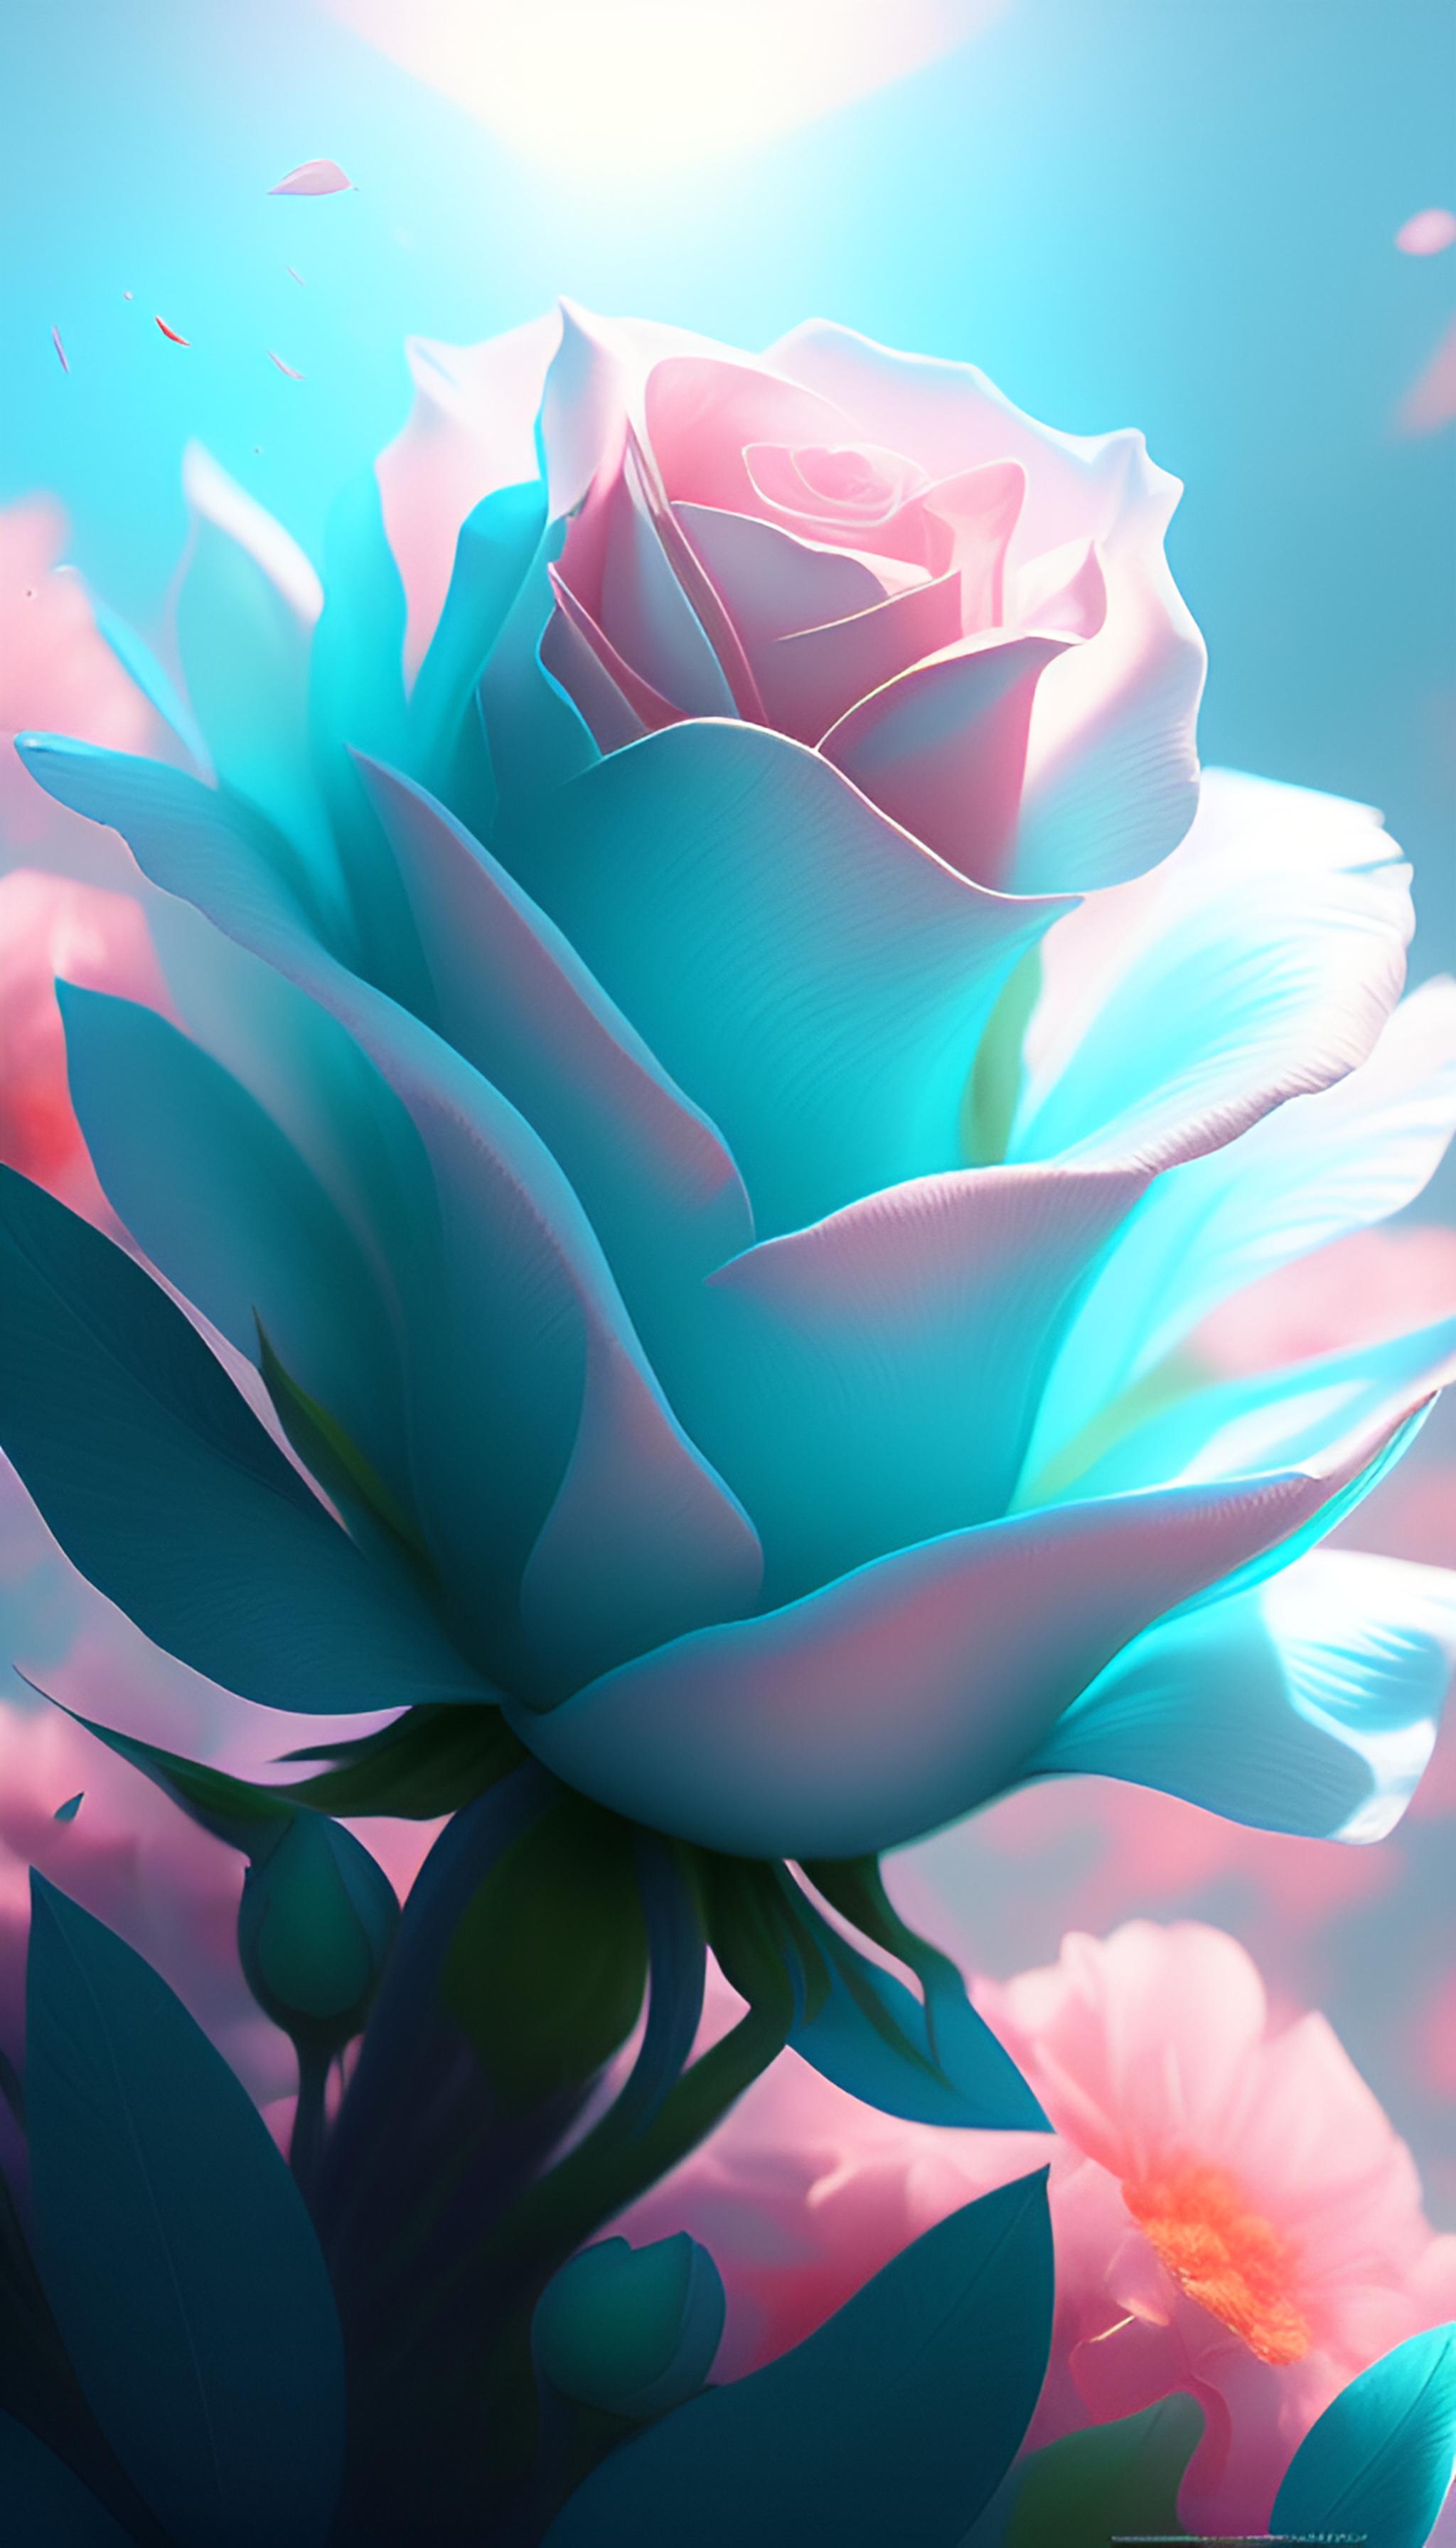 一朵青色玫瑰花